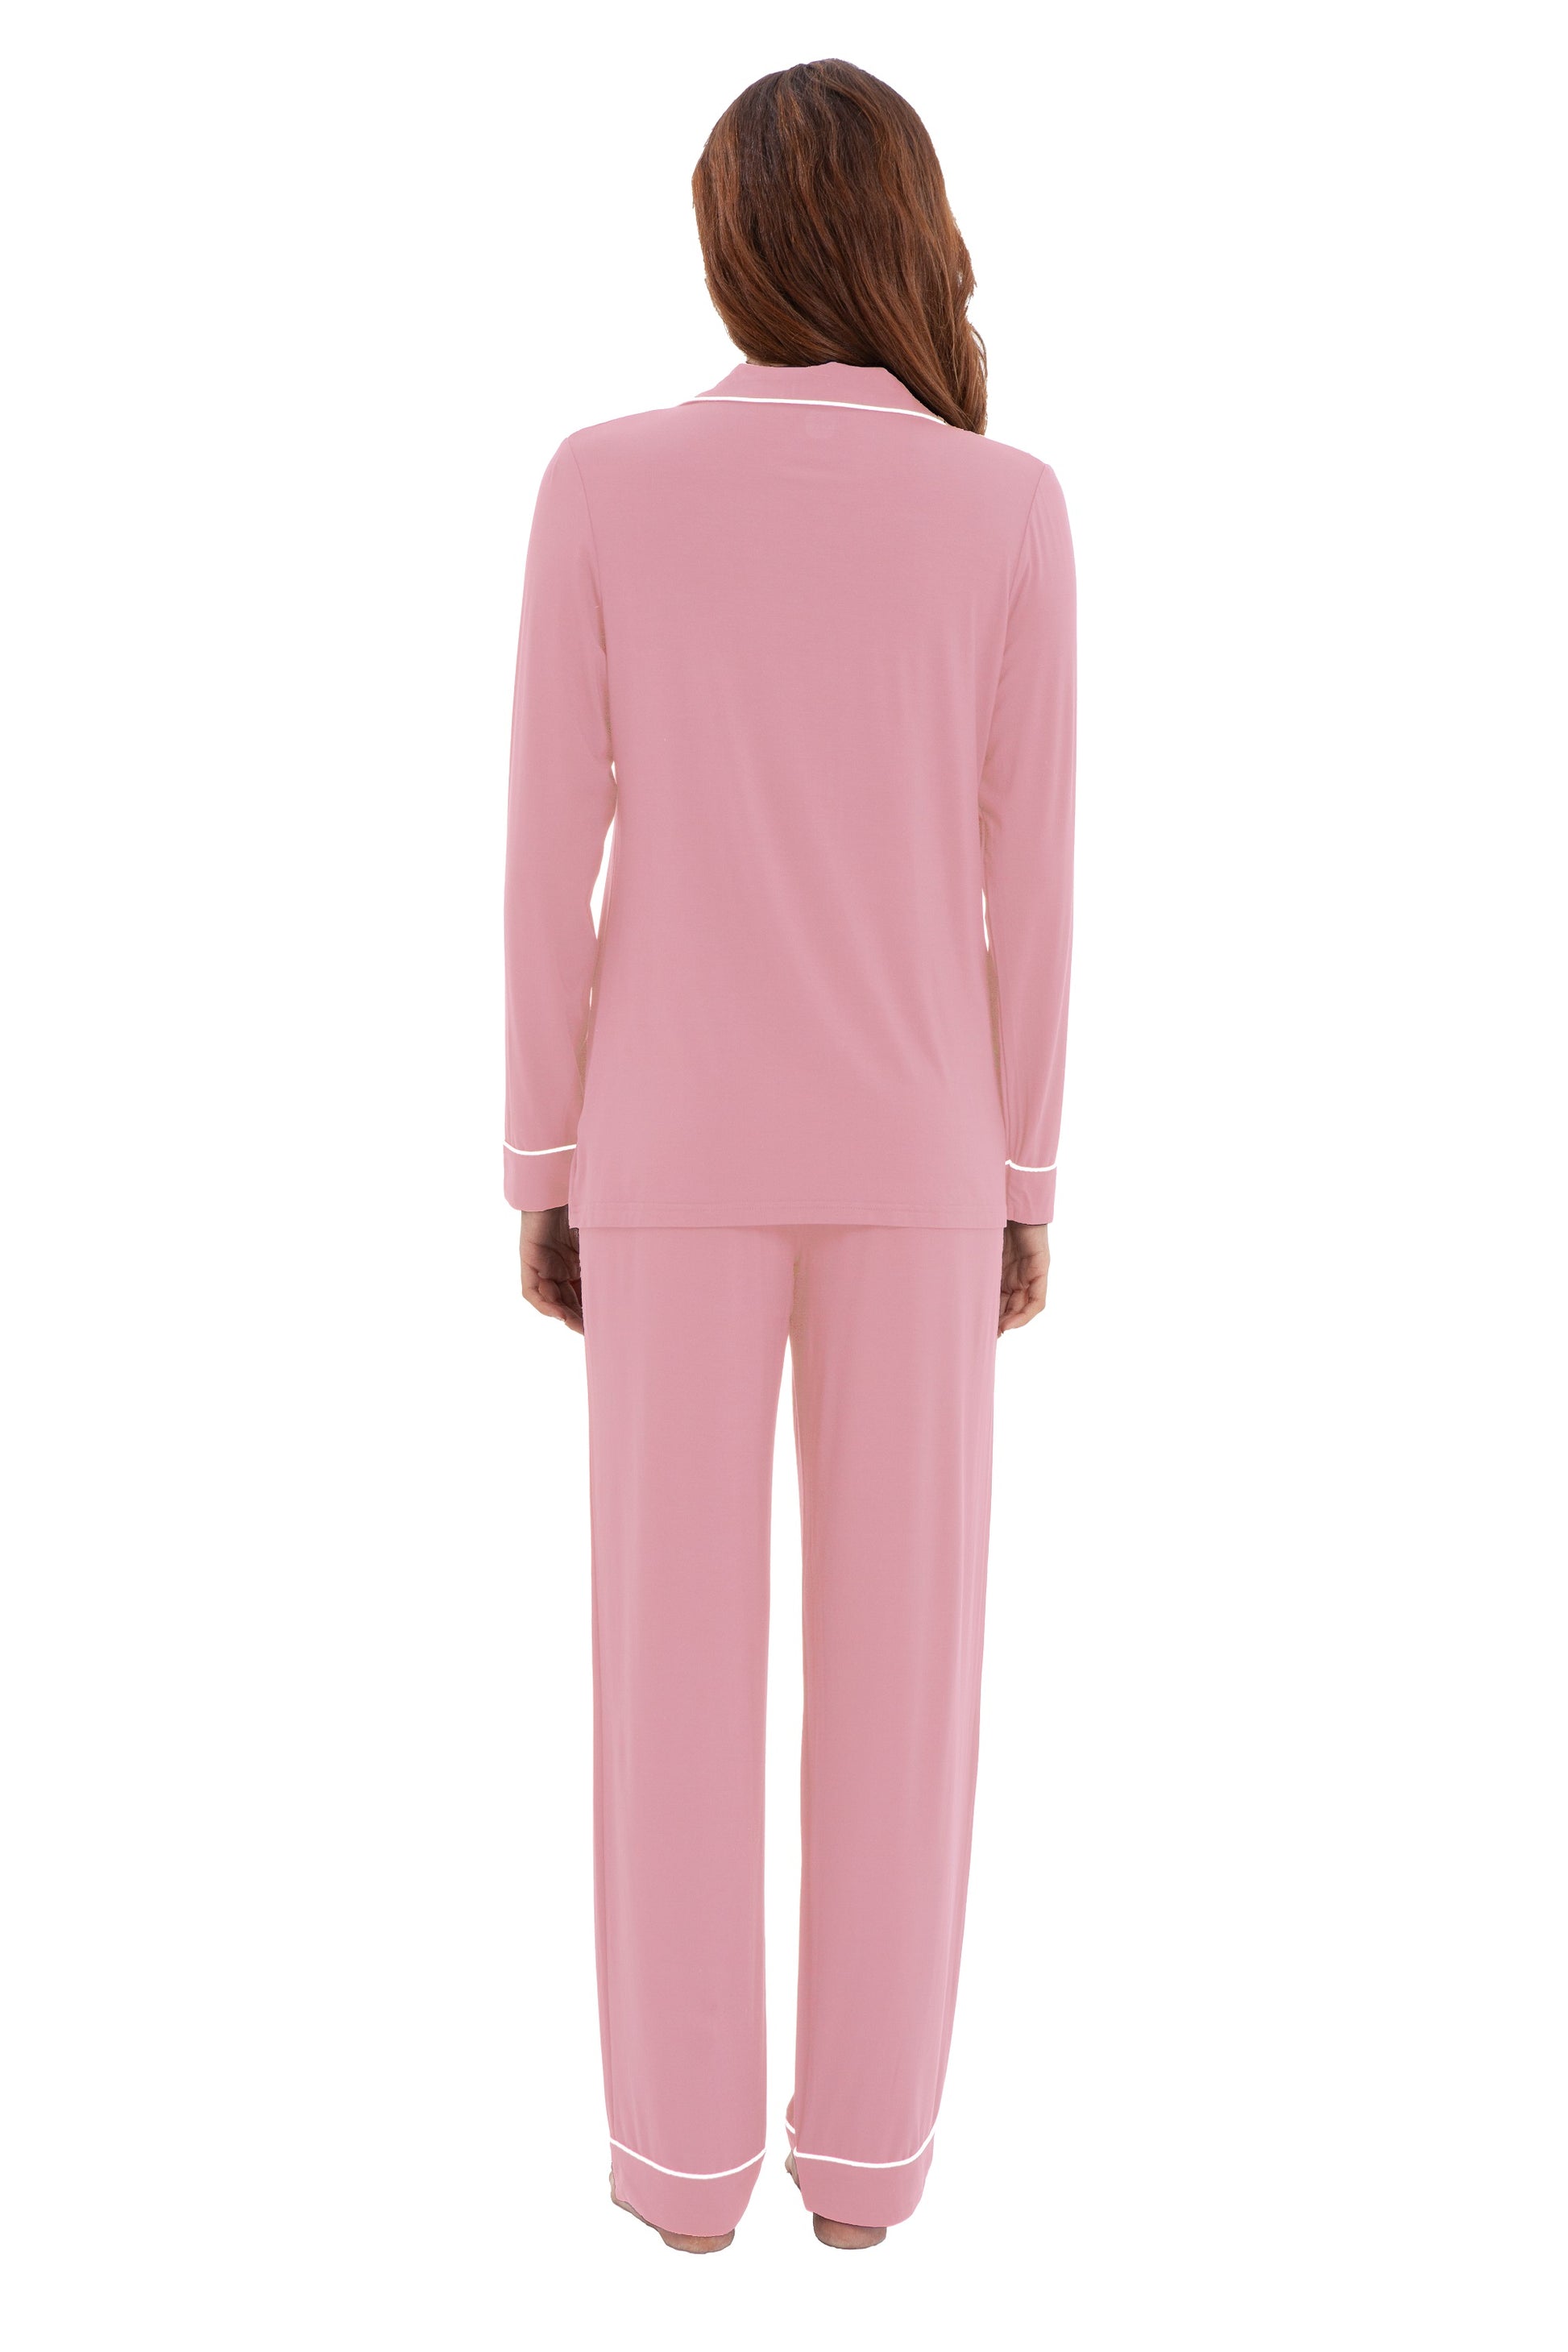 2-Piece Mother & Baby Loungewear/Sleepwear Set - Dusty Pink